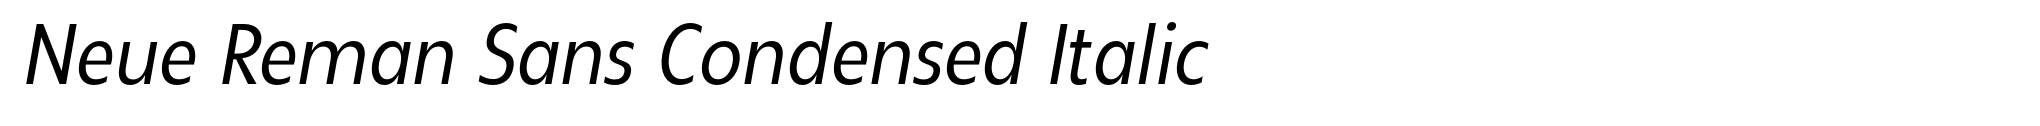 Neue Reman Sans Condensed Italic image